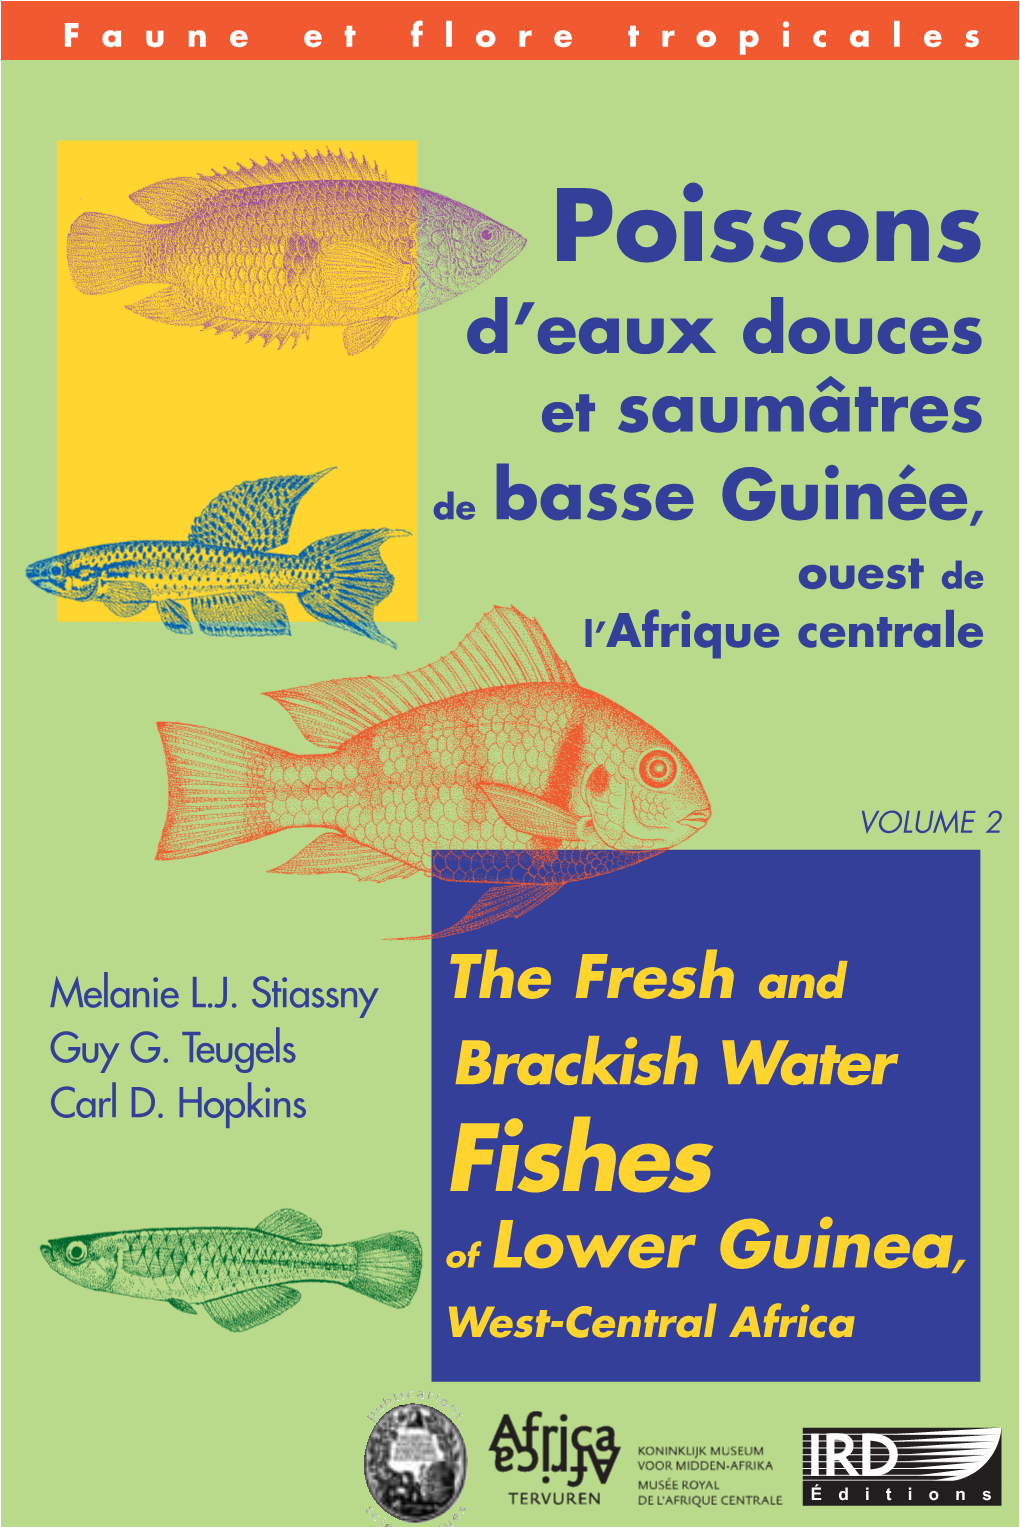 Poissons D'eaux Douces Et Saumâtres De Basse Guinée, Ouest De L’Afrique Centrale VOLUME 2